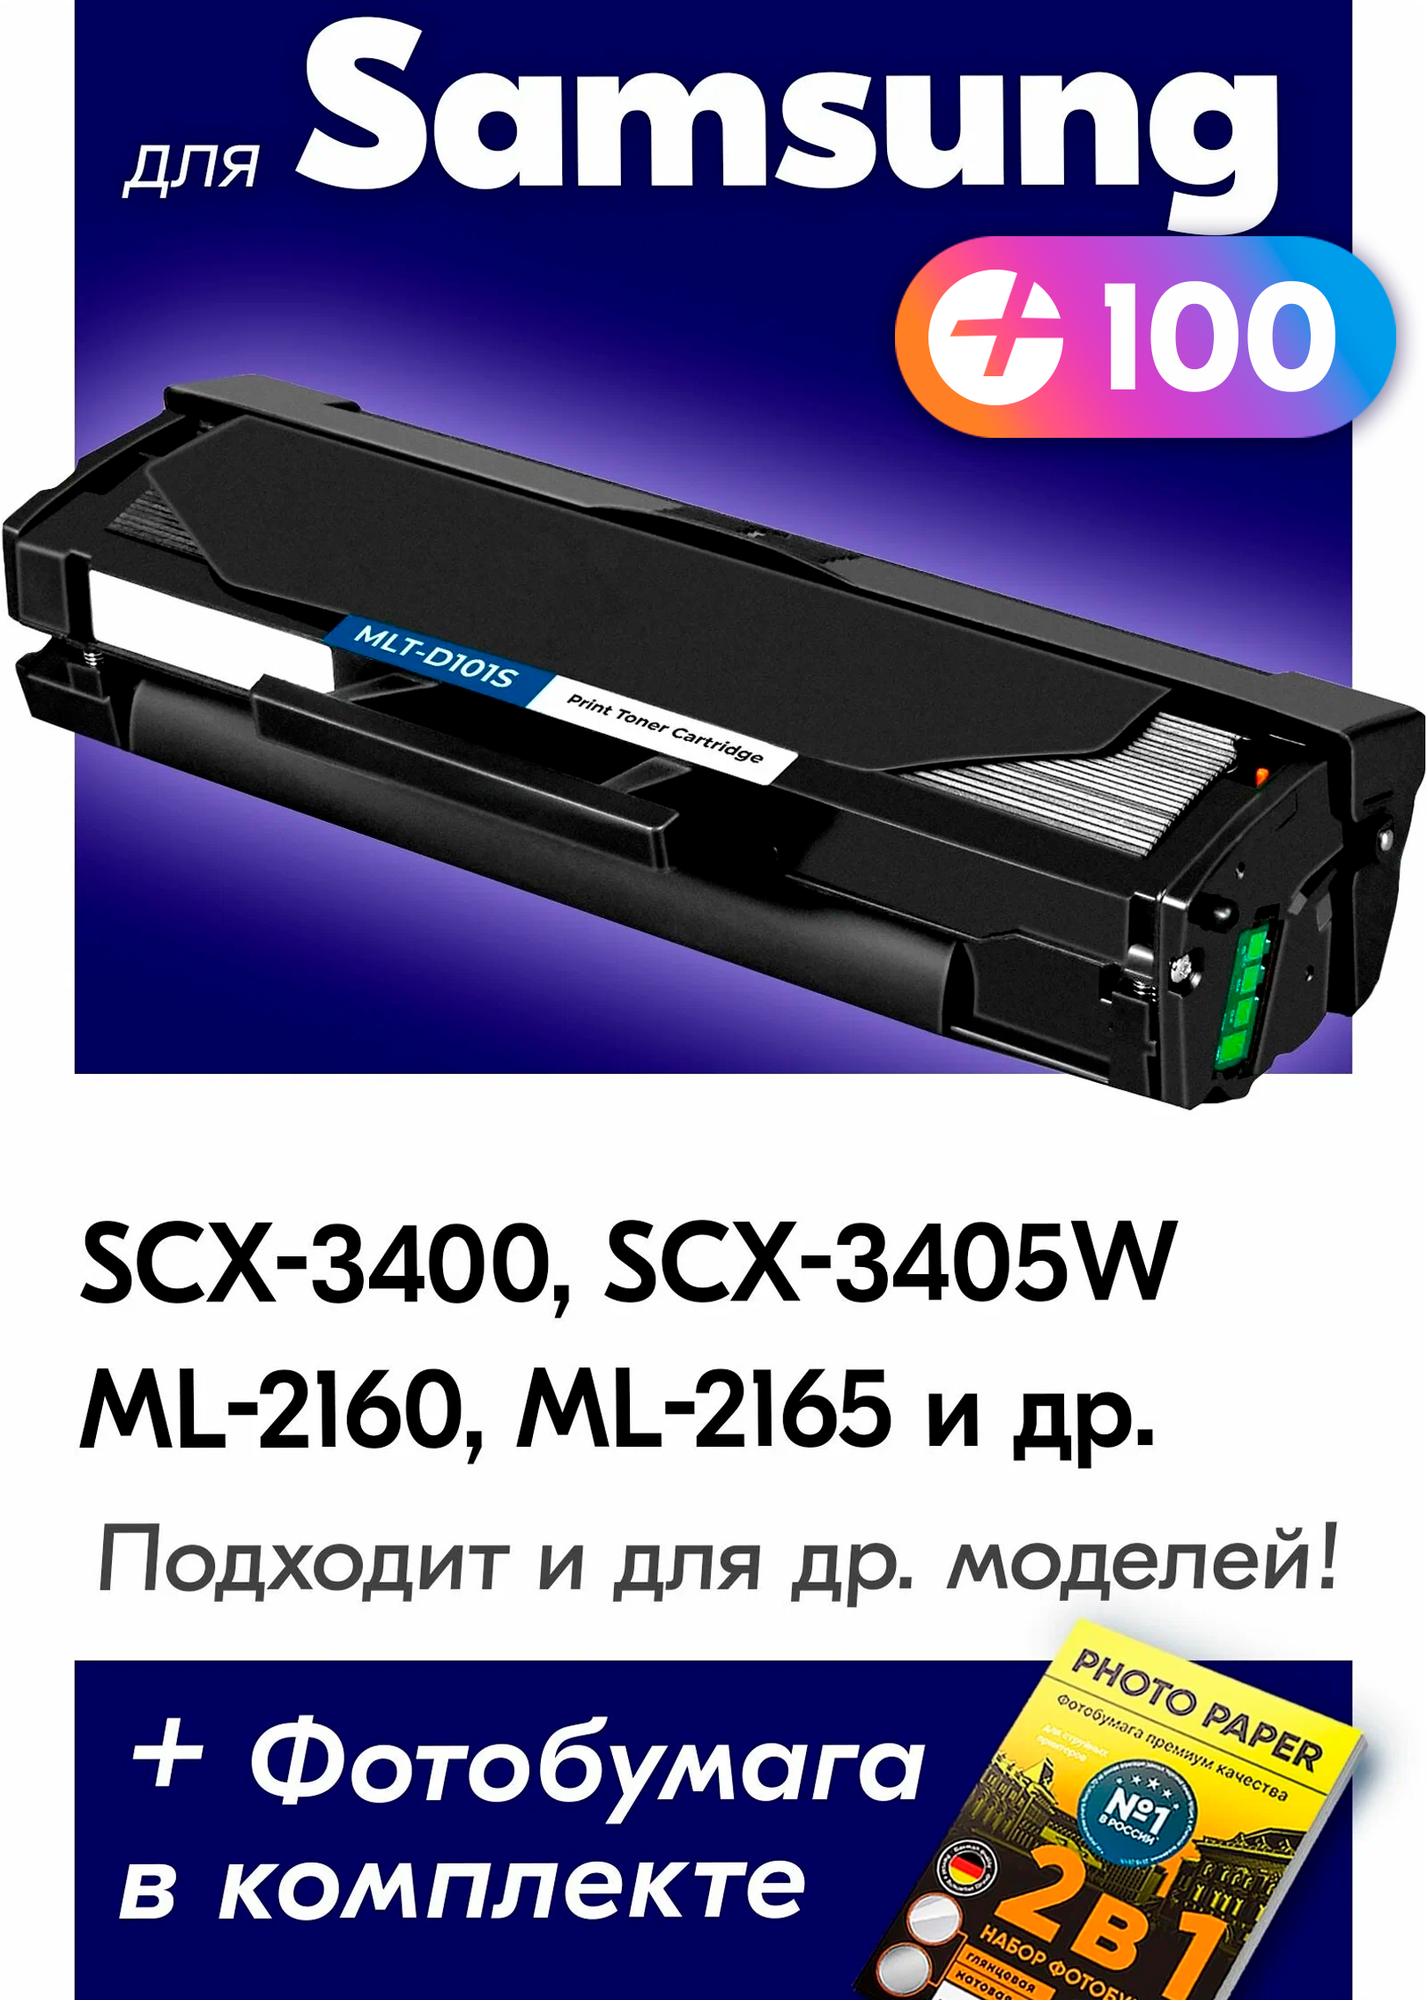 Лазерный картридж для Samsung MLT-D101S, Samsung ML-2160, SCX-3405FW, ML-2162, SCX-3405W и др. с краской (тонером) черный новый заправляемый.